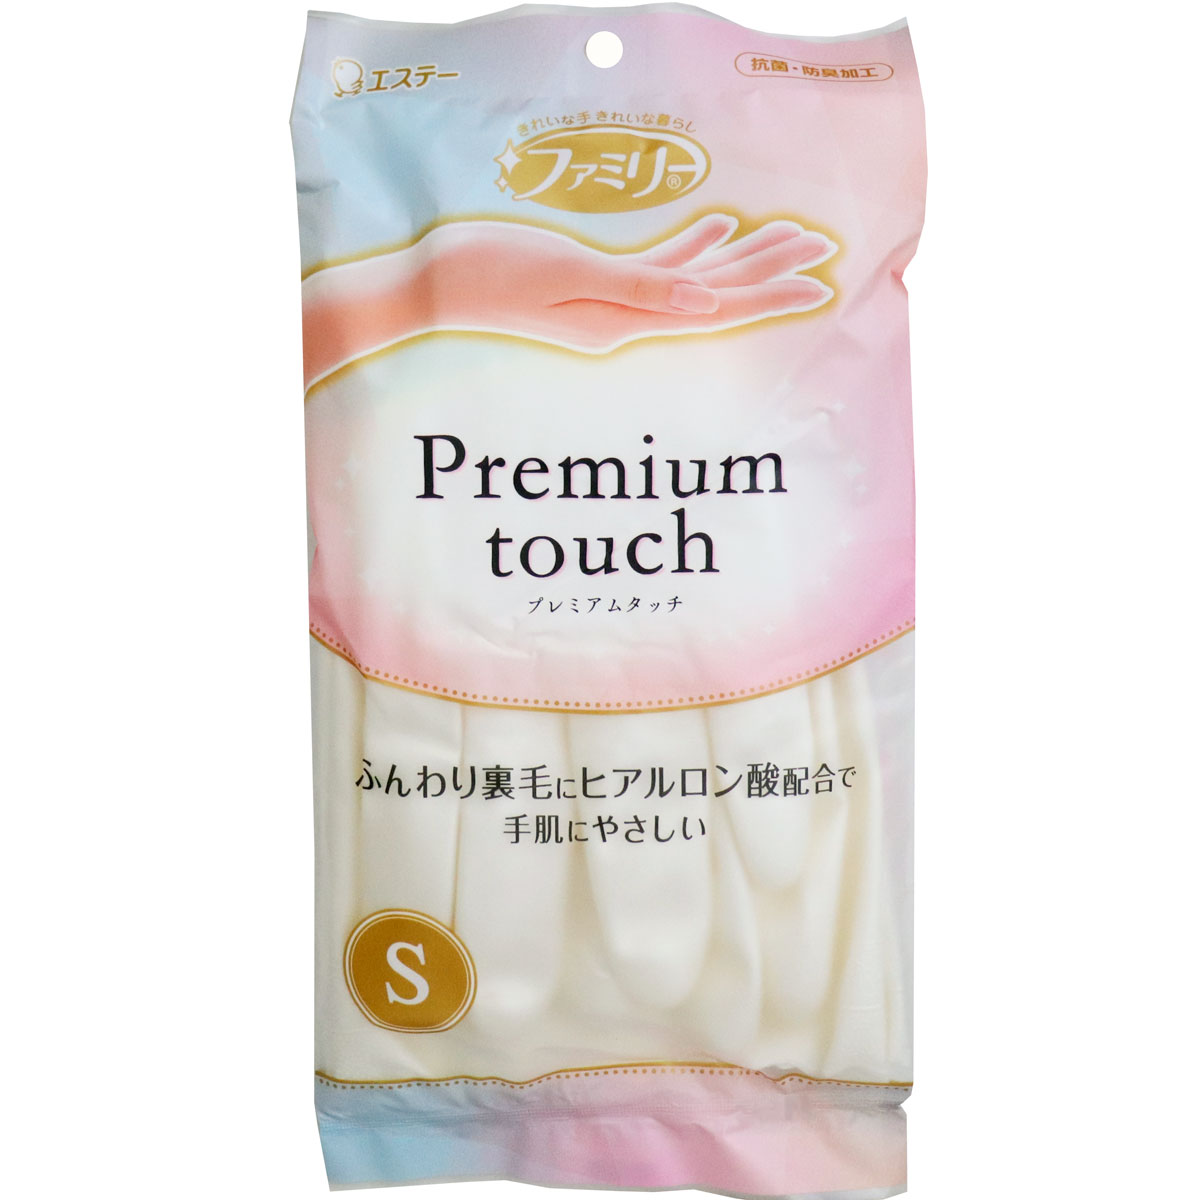 Перчатки виниловые ST "Premium Touch" жемчужного цвета средней толщины,с внутренним покрытием и гиалуроновой кислотой , S, Япония